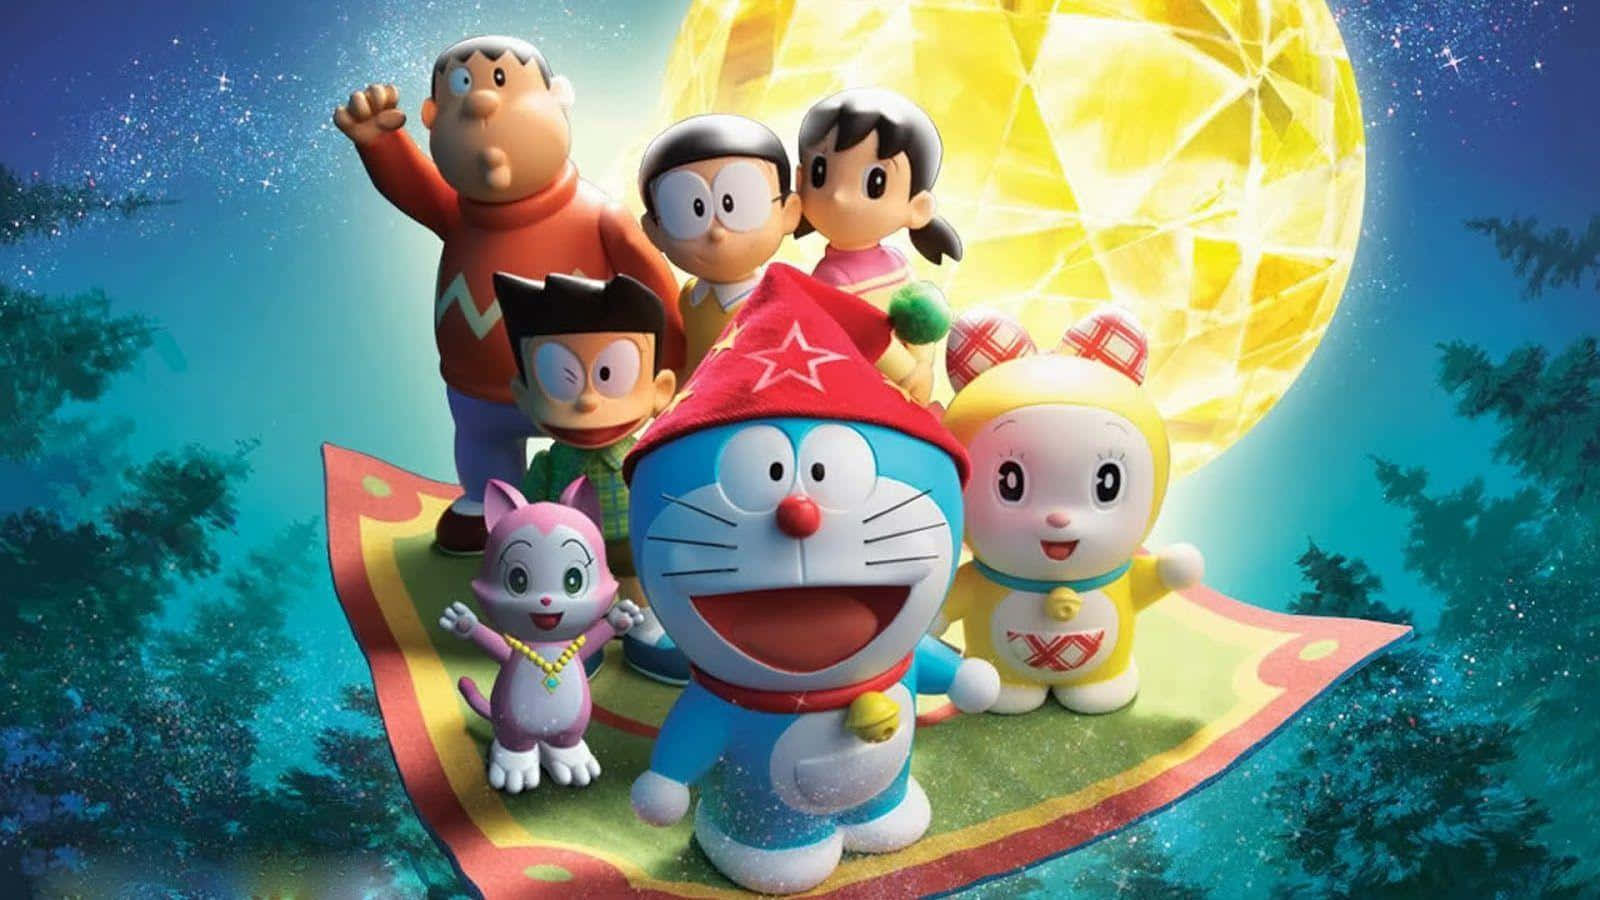 Doraemonvermittelt Lebensweisheiten Durch Seine Warmherzige Kreativität.